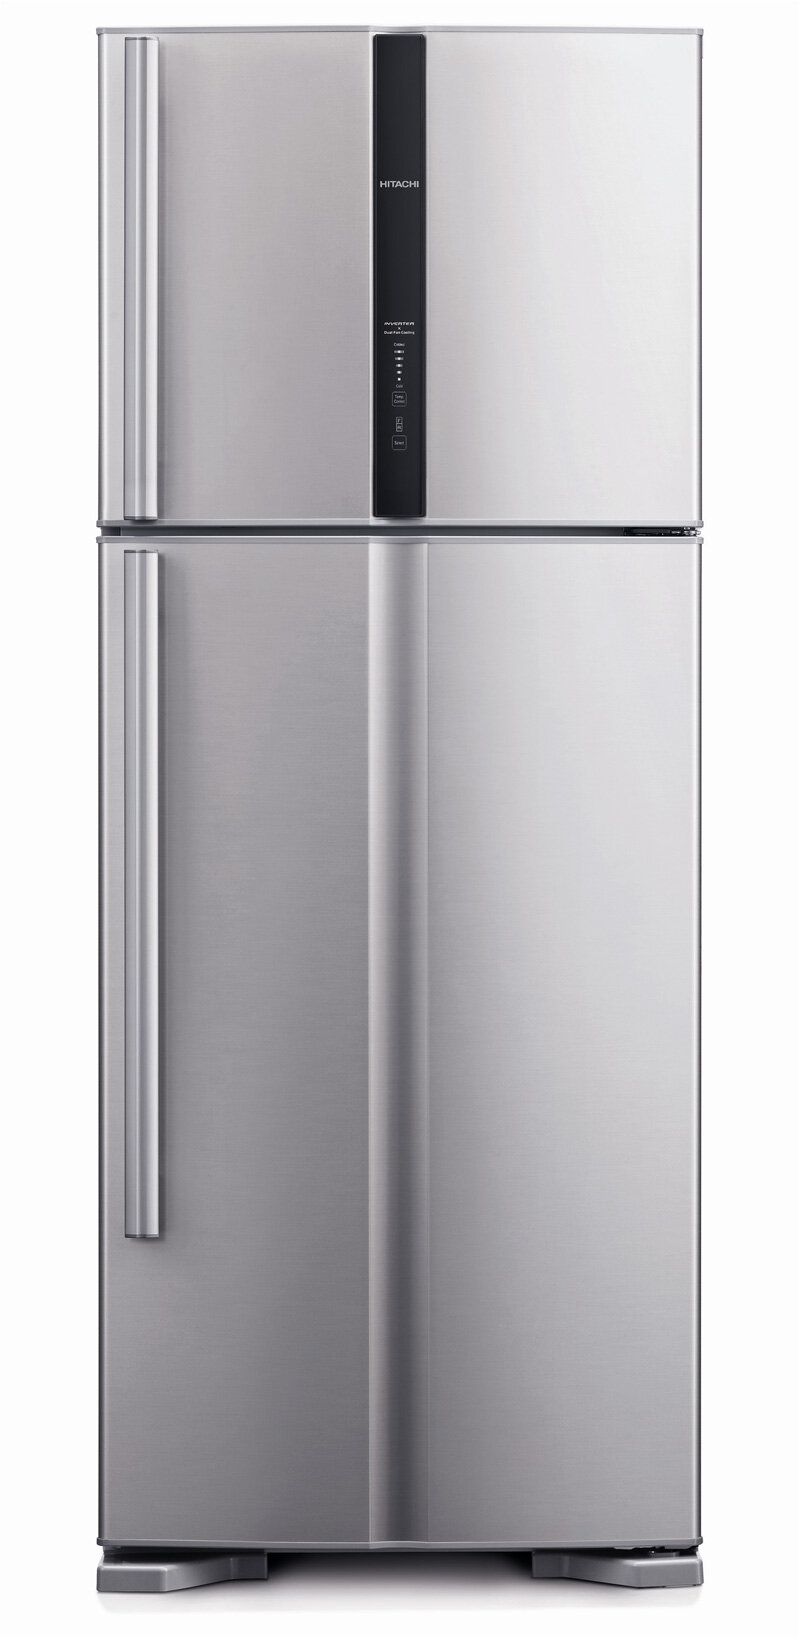 Tủ lạnh hàng nội địa Nhật của Hitachi có thiết kế tinh tế, sang trọng